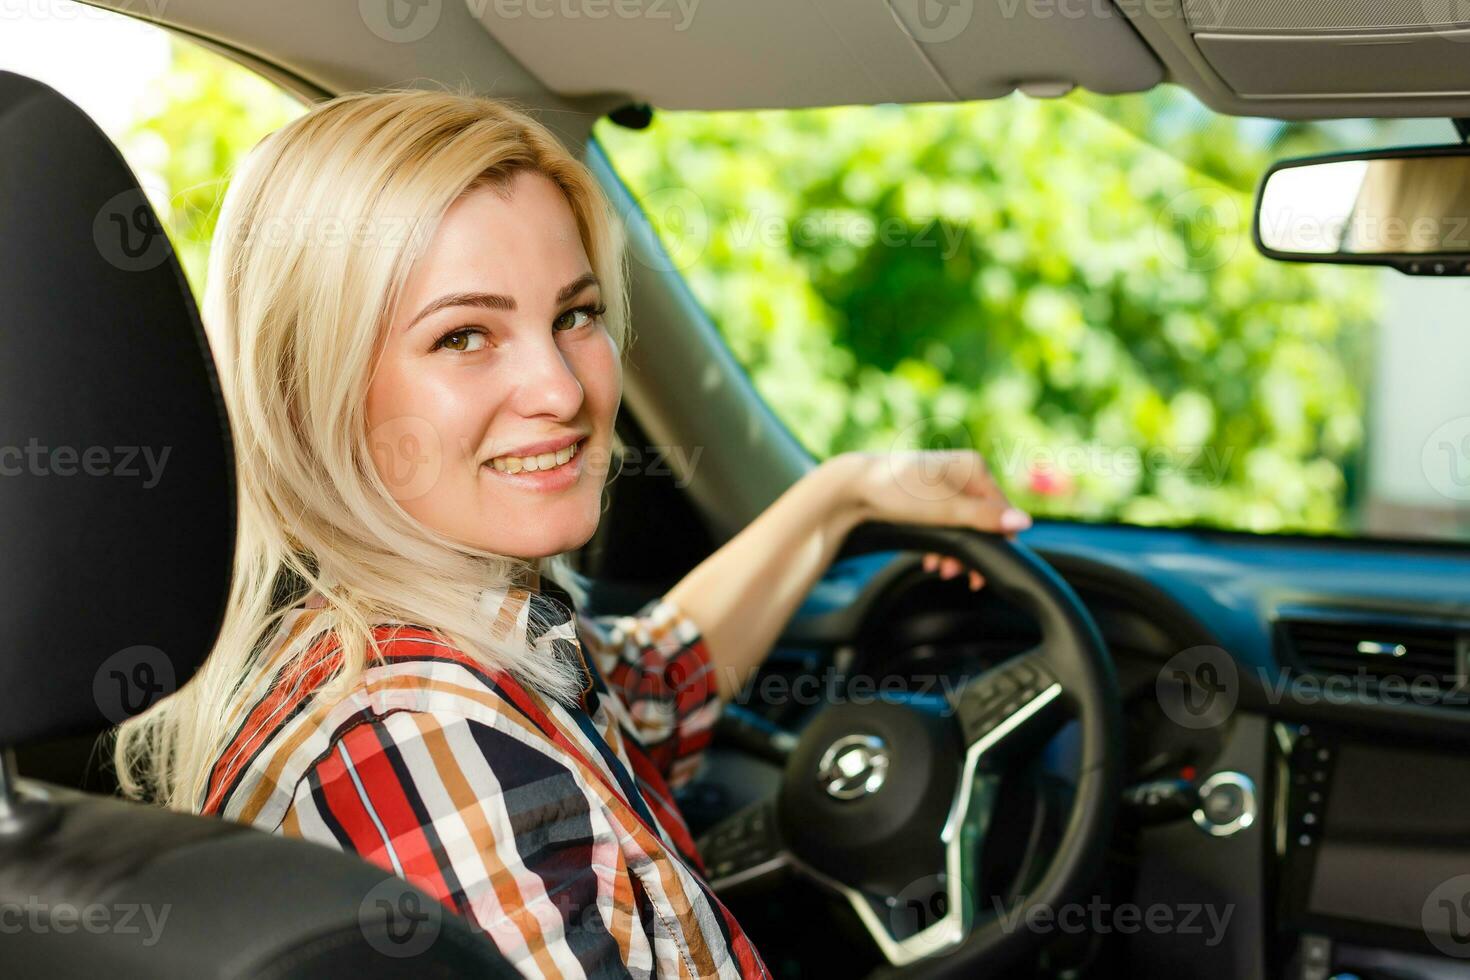 confidente y hermosa. atractivo joven mujer en casual vestir conducción un coche foto